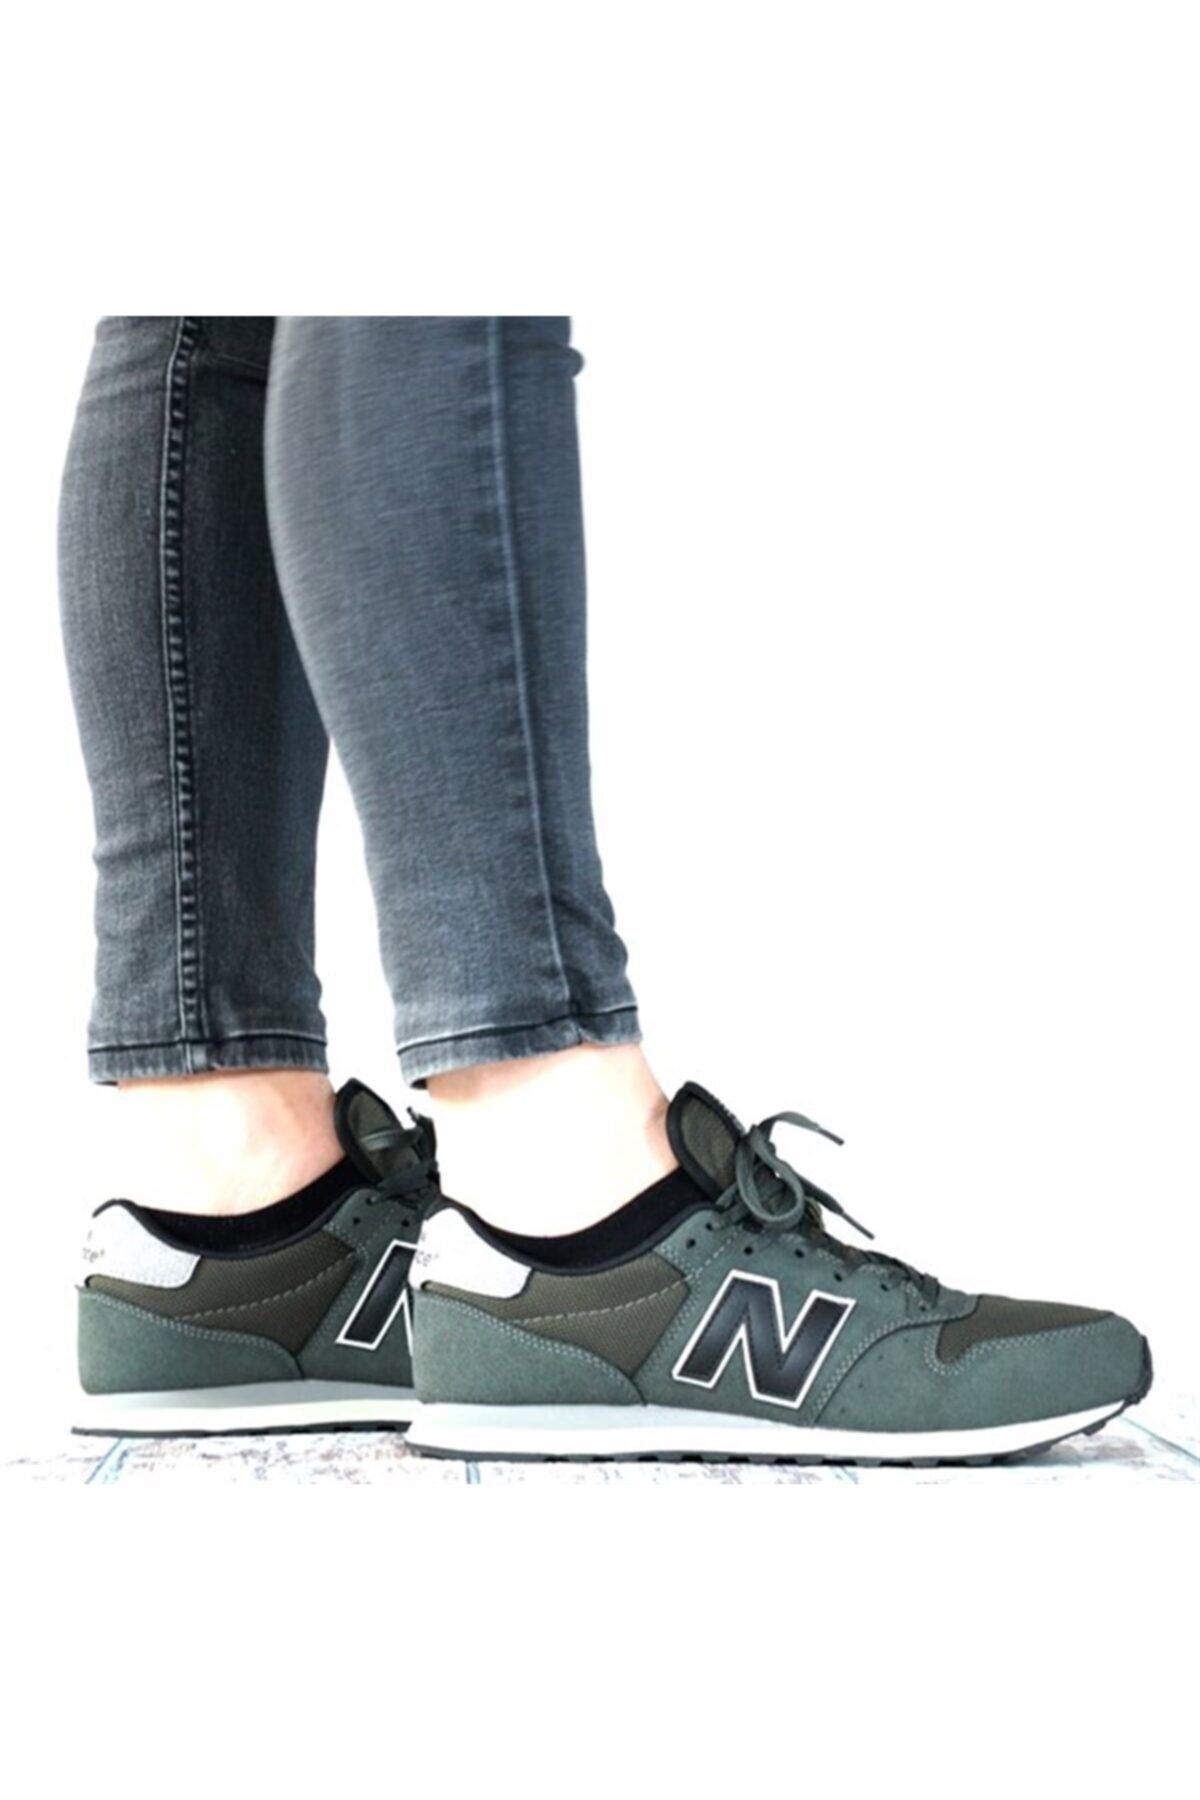 New Balance 500 Haki Erkek Sneaker Spor Ayakkabı Gm500tgg